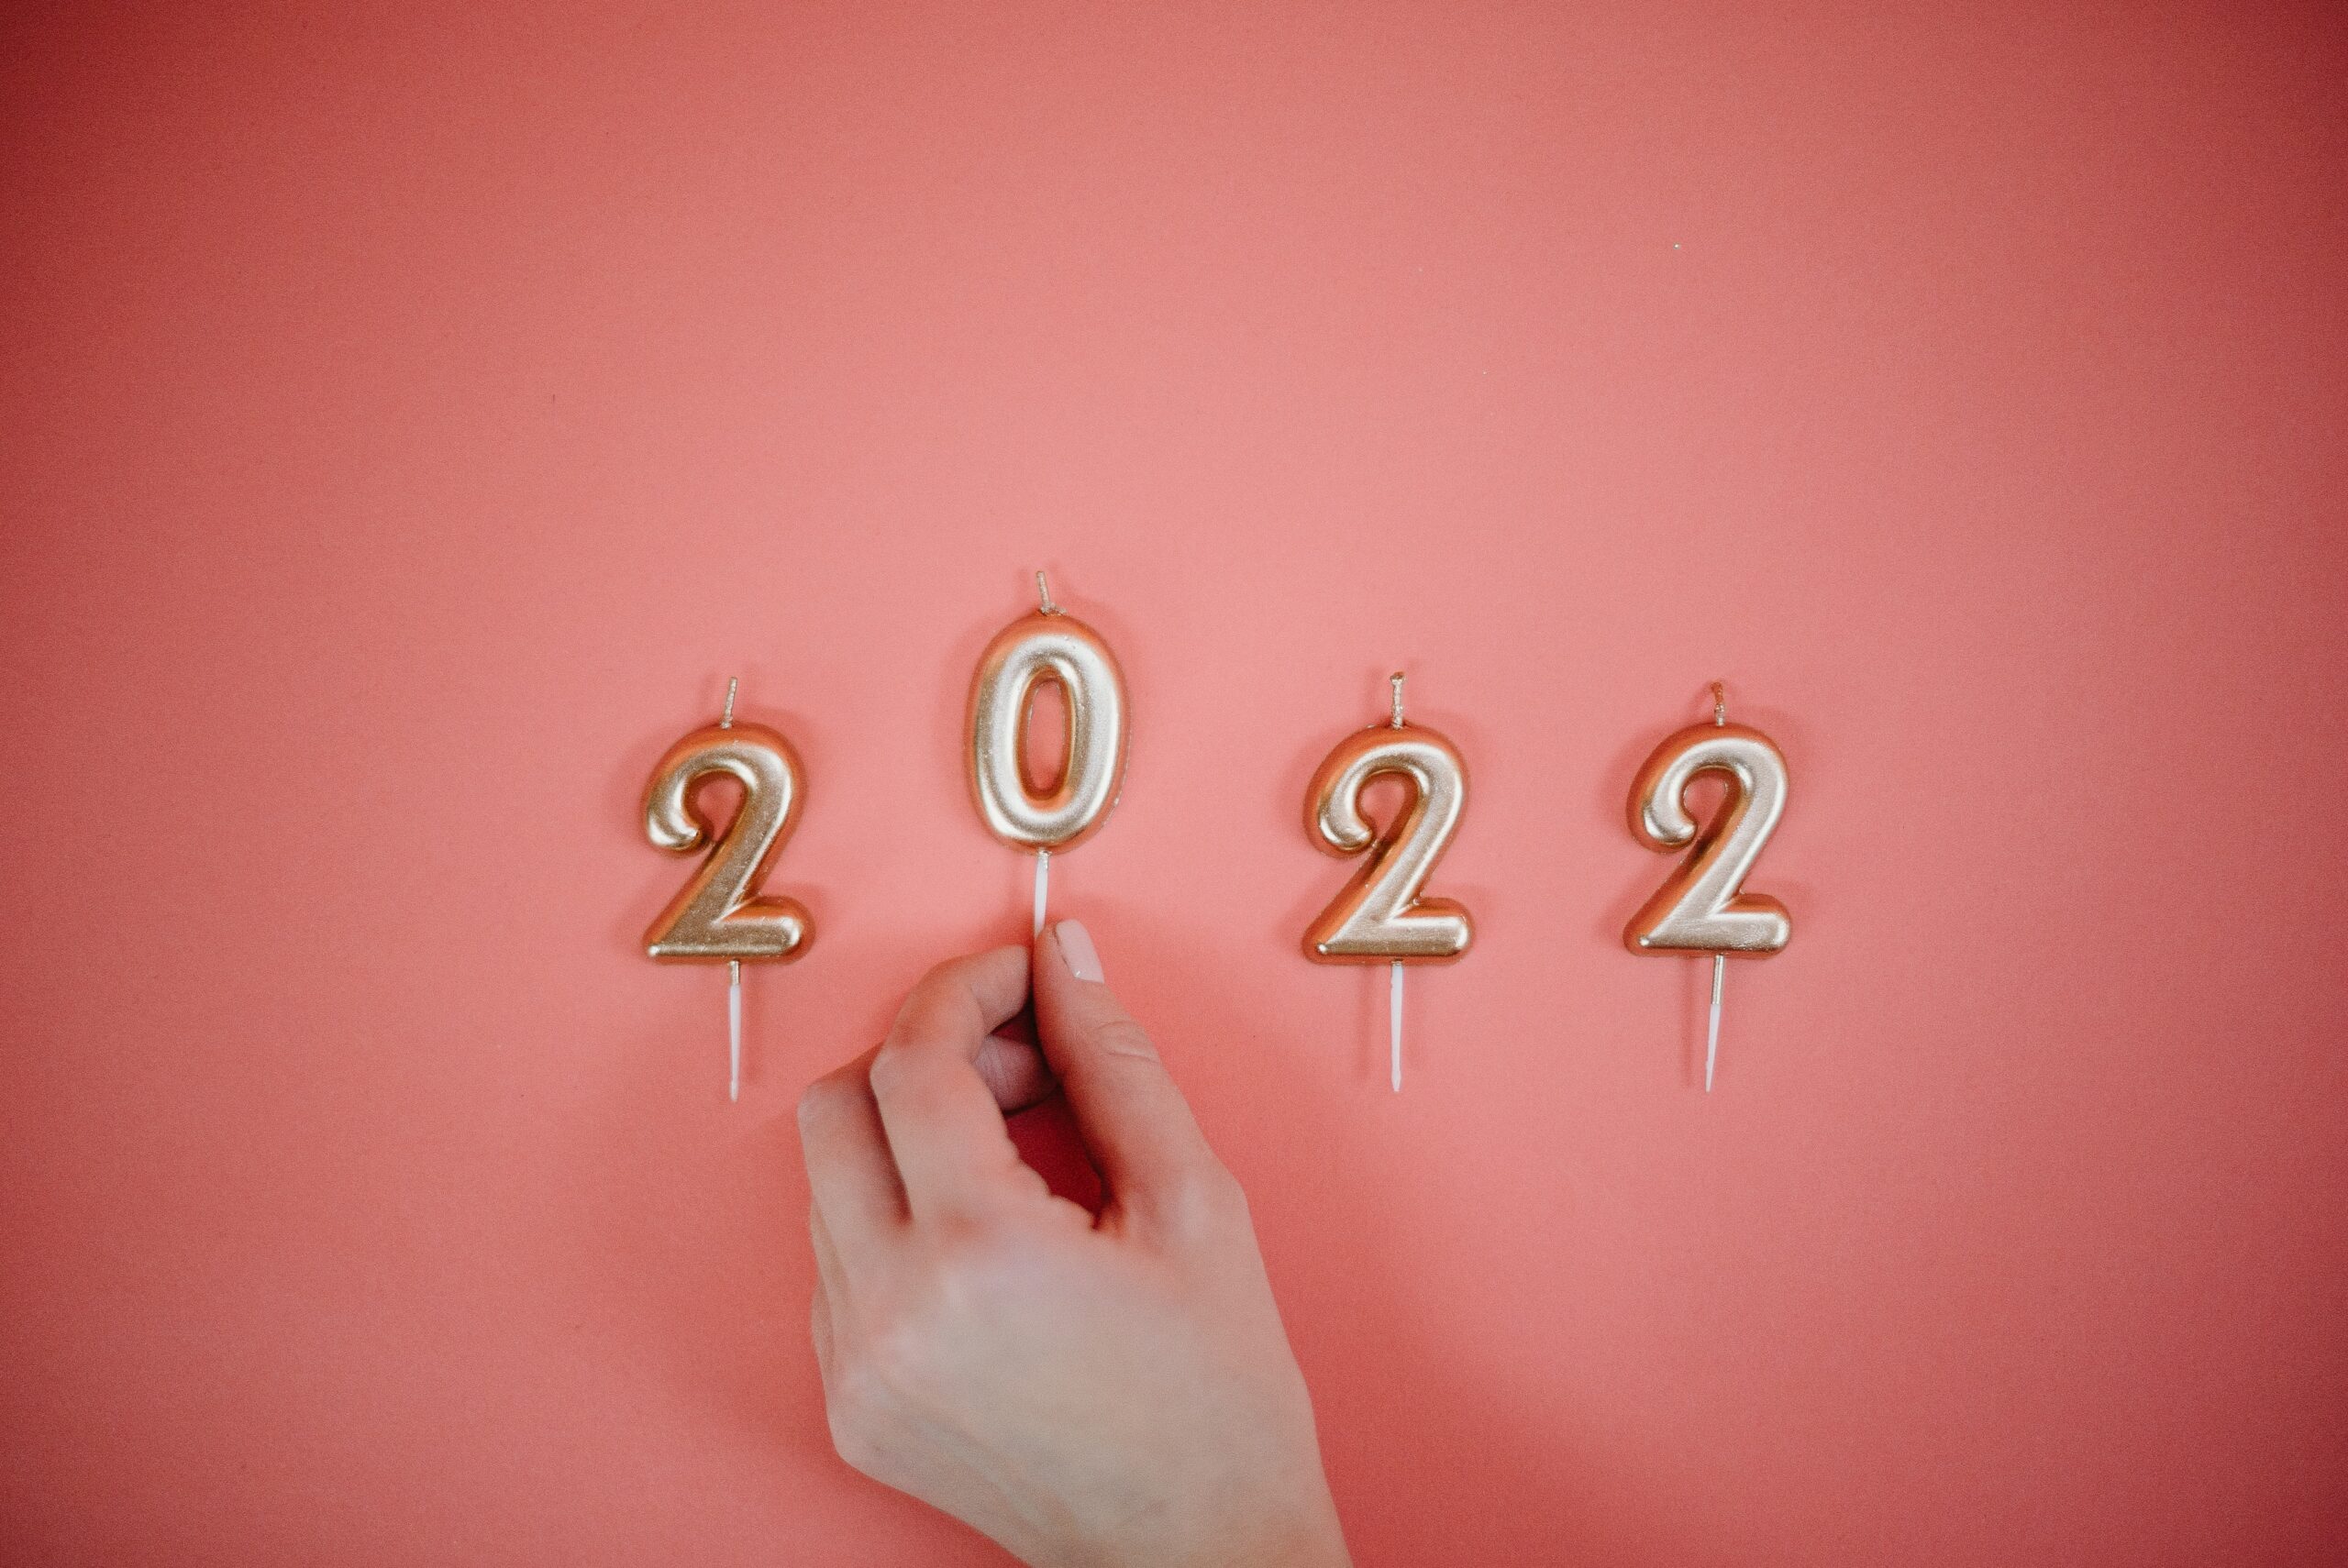 Você está visualizando atualmente Quer estudar fora em 2022? Comece a se preparar agora